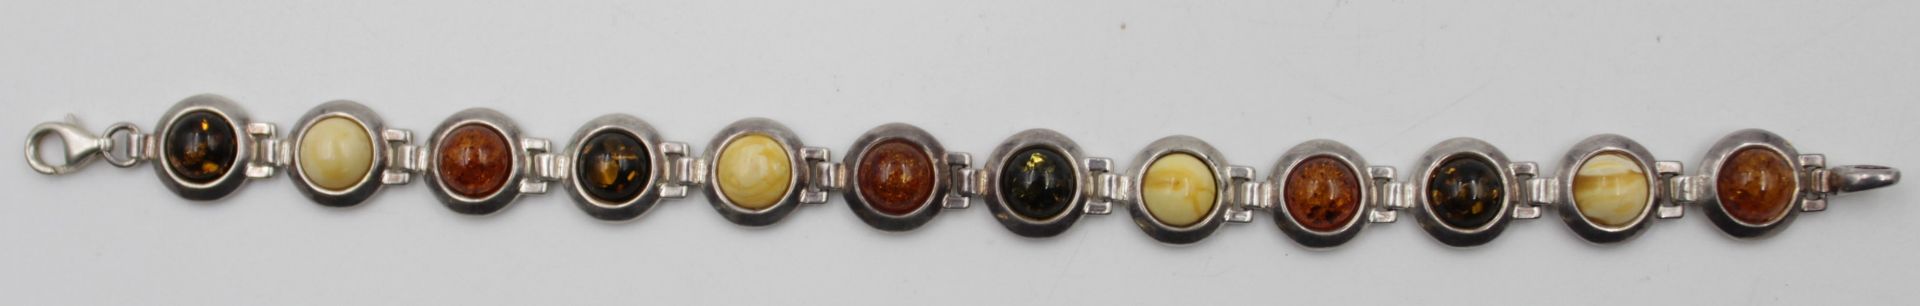 925er Silber-Armband mit Bernsteinbesatz, zus. 20,7gr., L-20,5cm.